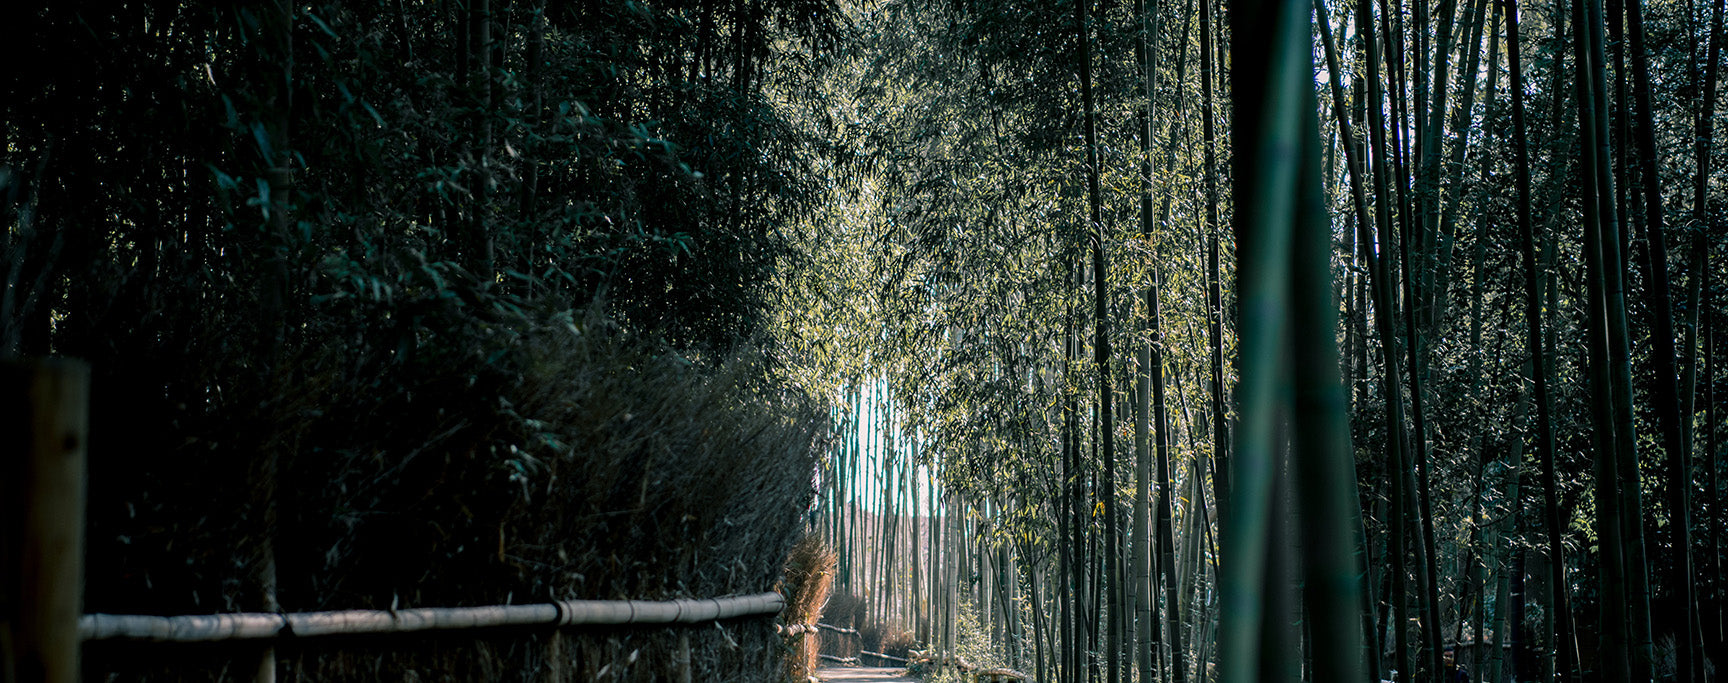 Engagement dans la croissance et le renouvellement bambou calme